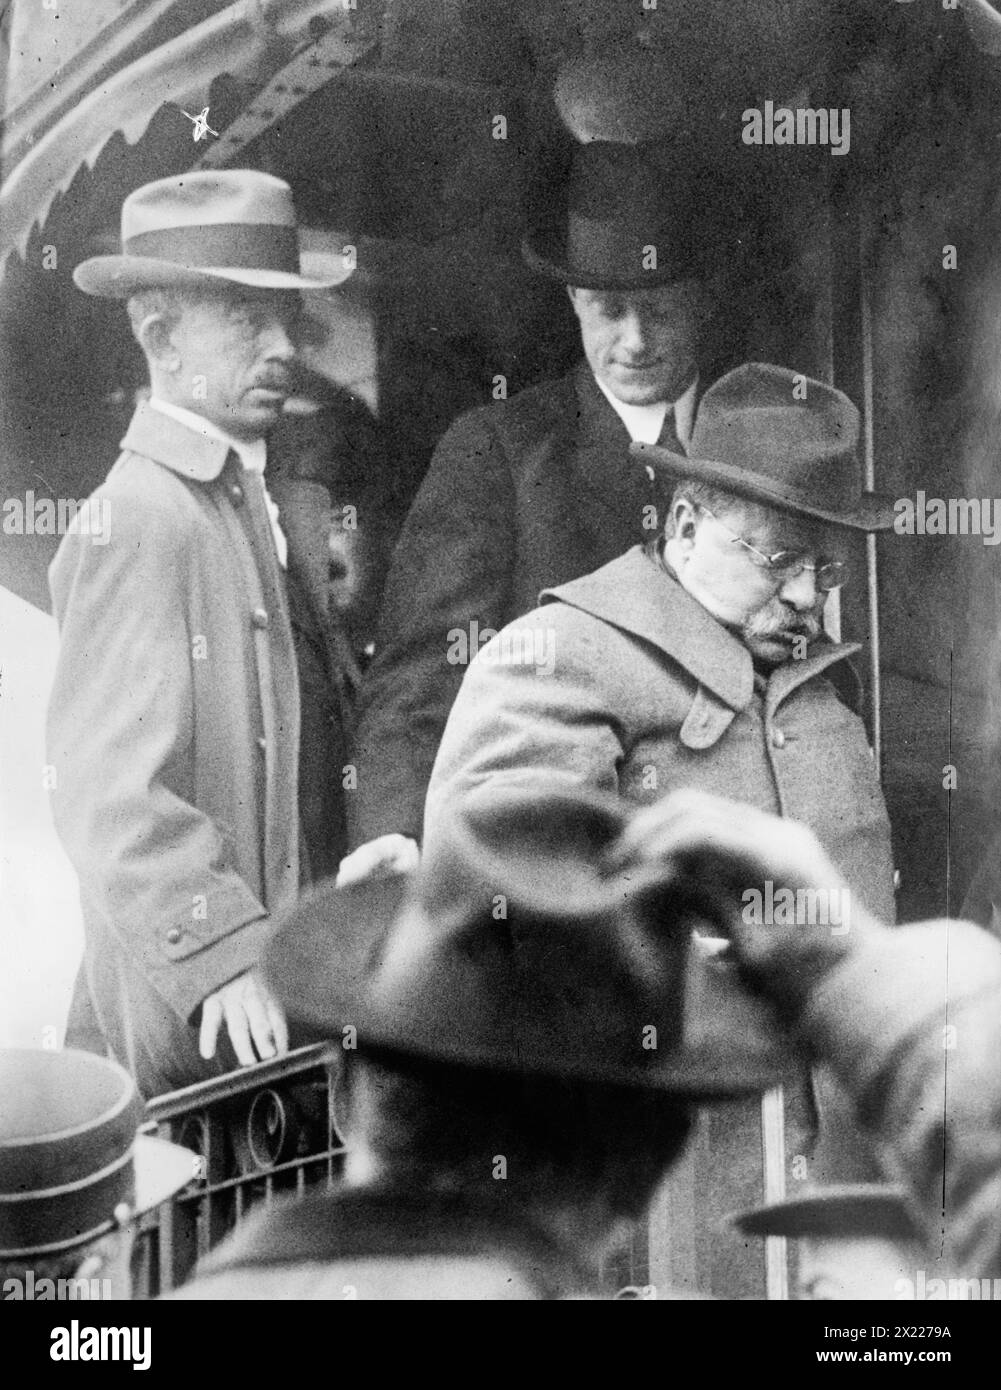 Roosevelt raggiunge Oyster Bay, 1912. Mostra il presidente Teddy Roosevelt che scende da un treno a Oyster Bay, Long Island, dopo un tentativo di assassinio di John F. Schrank. Il colonnello Cecil Lyons è dietro di lui sul treno. Foto Stock